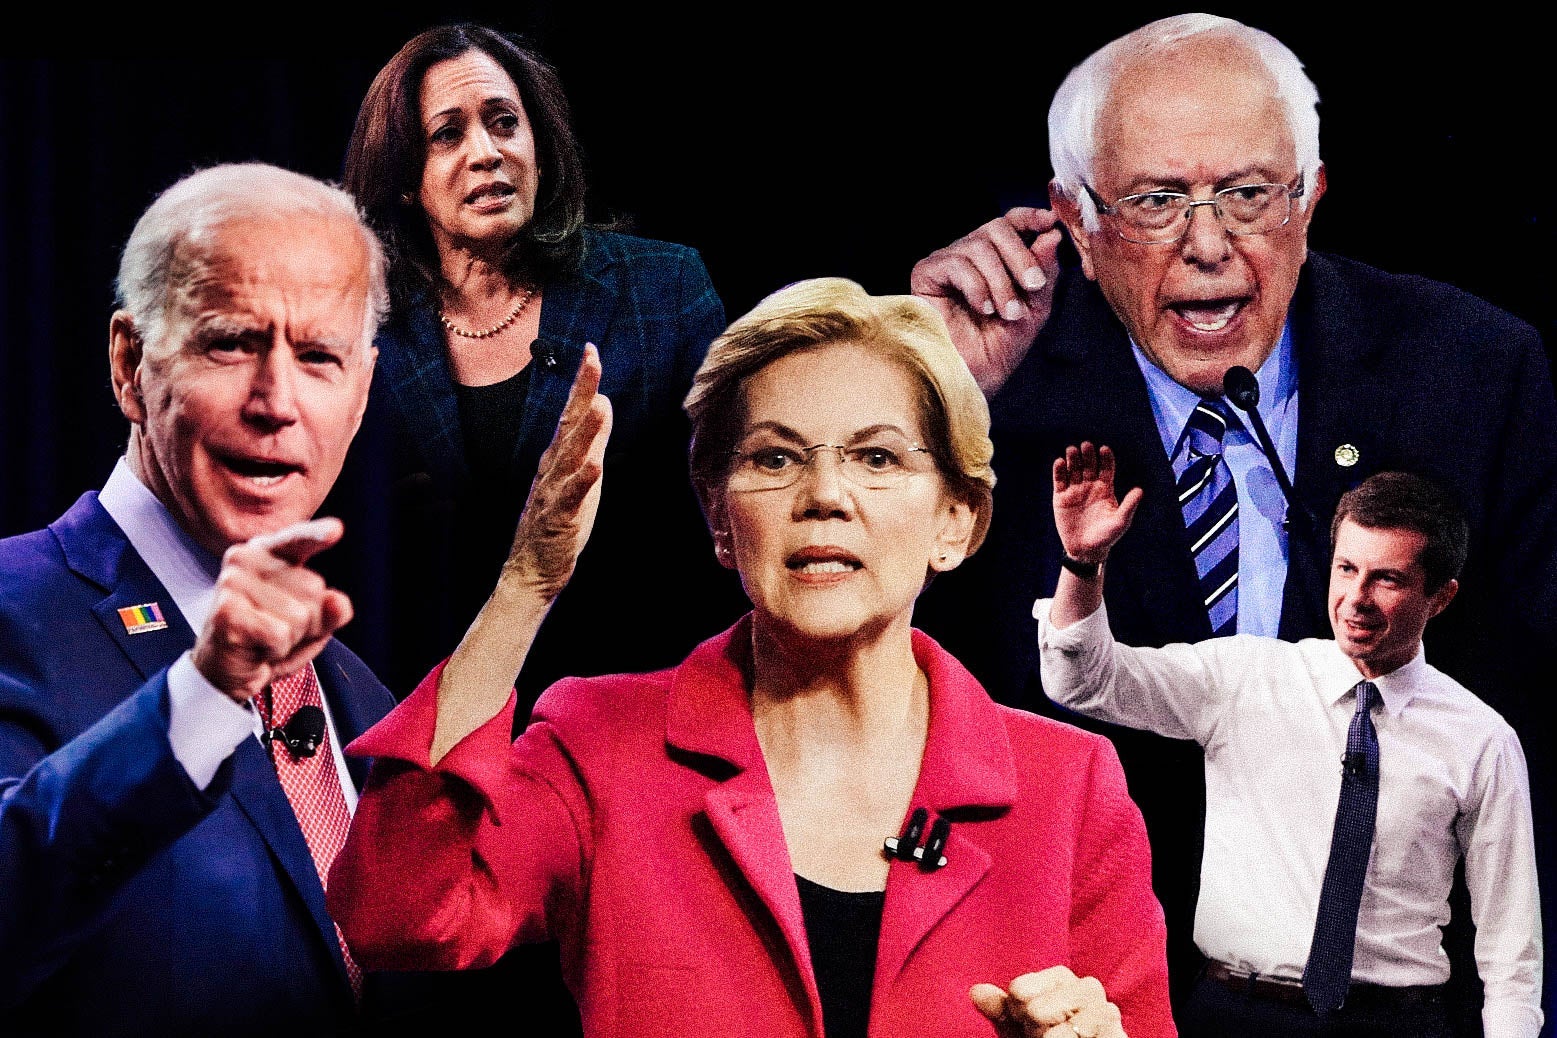 Joe Biden, Kamala Harris, Elizabeth Warren, Bernie Sanders, and Pete Buttigieg.